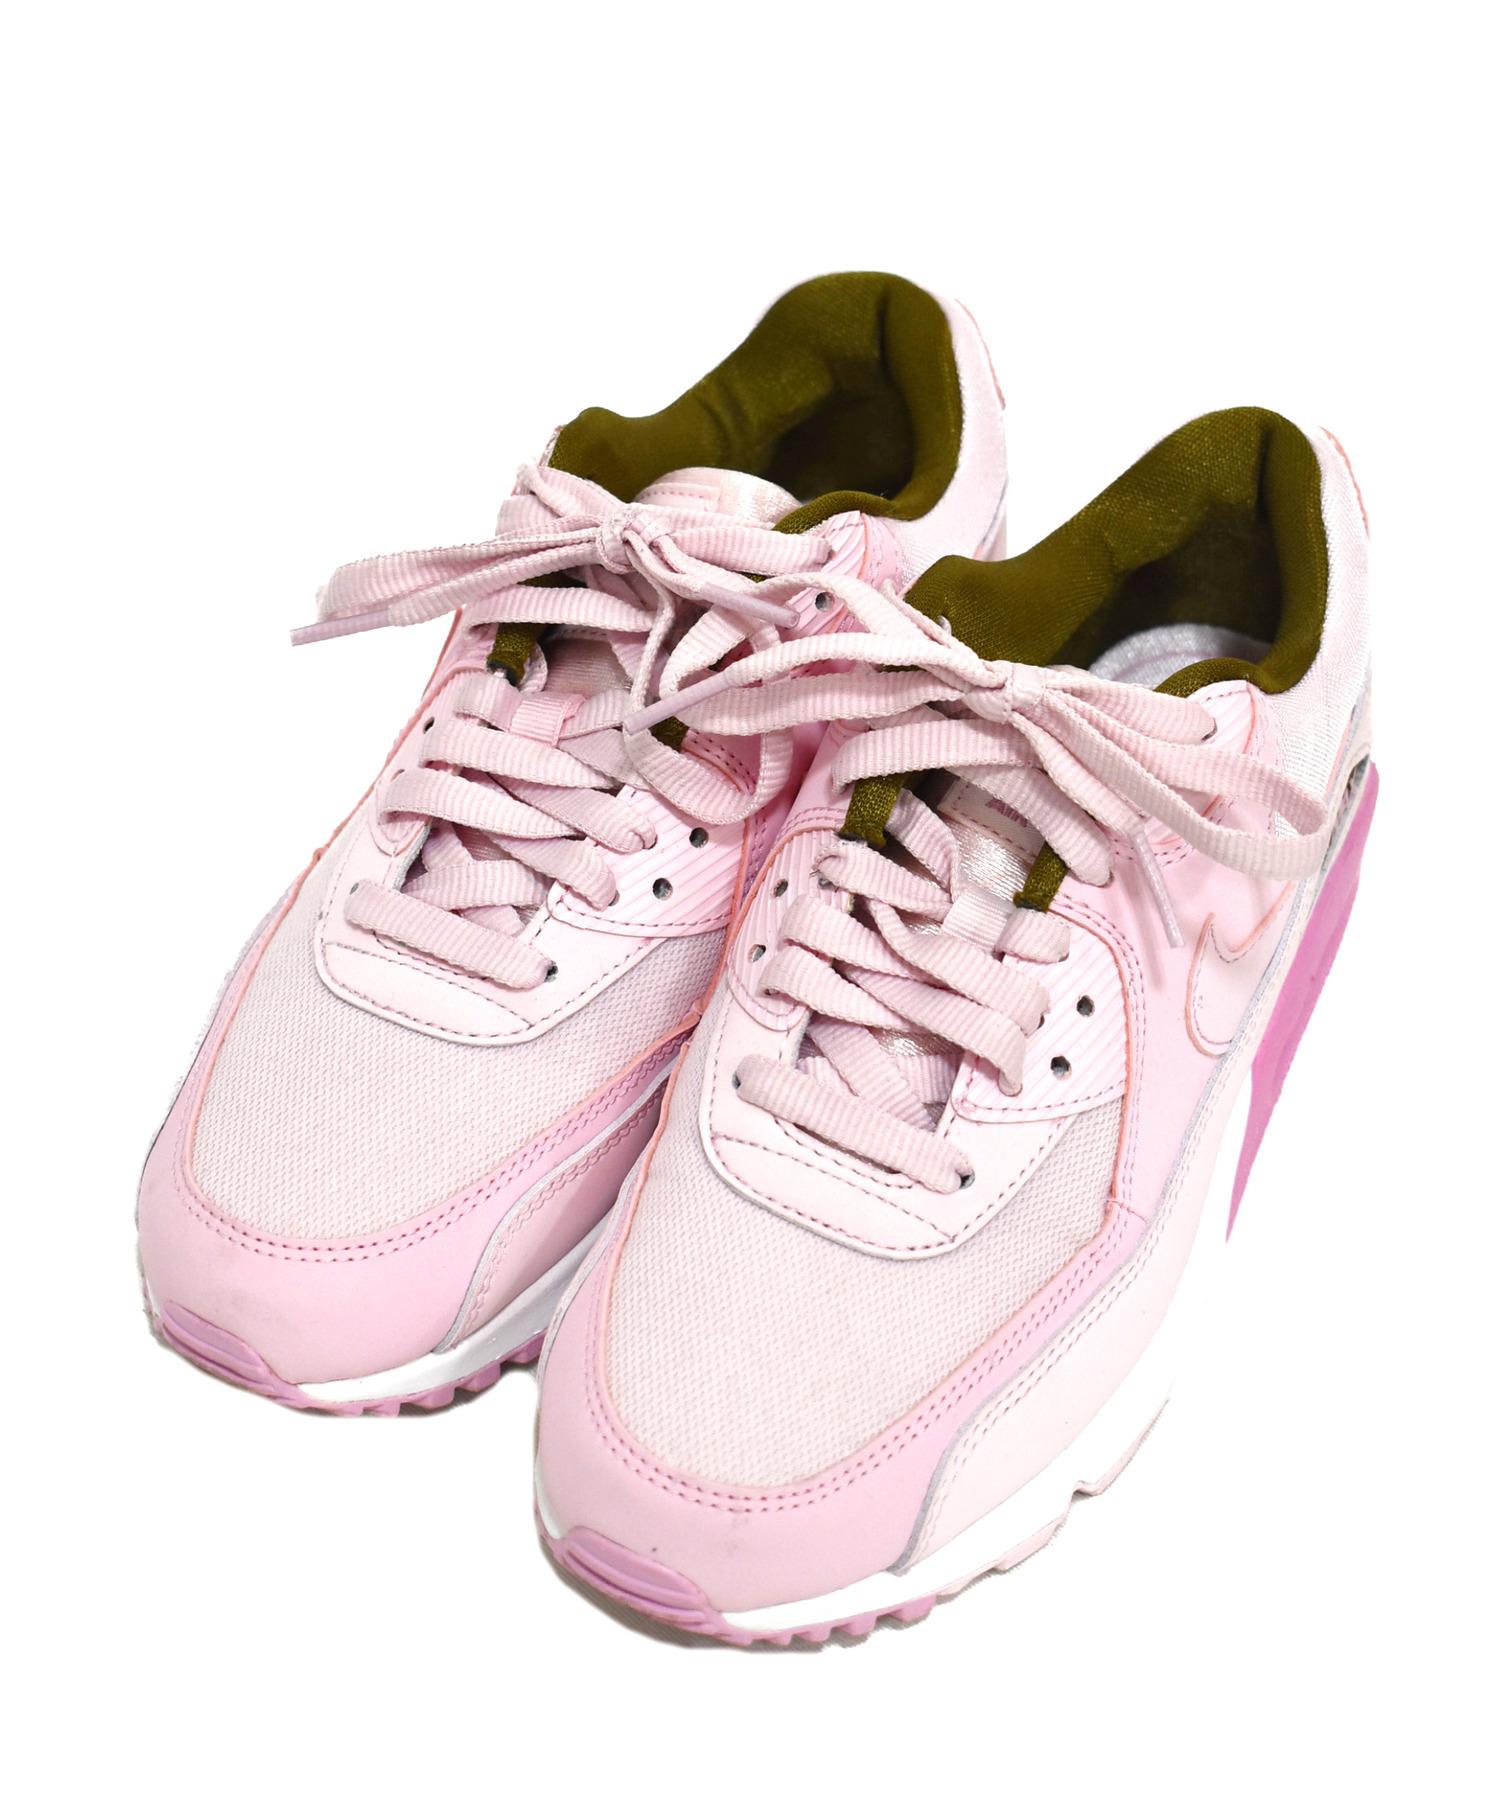 中古 古着通販 Nike ナイキ スニーカー ピンク サイズ 23 5 Wmns Air Max 90 Se Pink Foam 1105 605 Have A Nik ブランド 古着通販 トレファク公式 Trefac Fashion